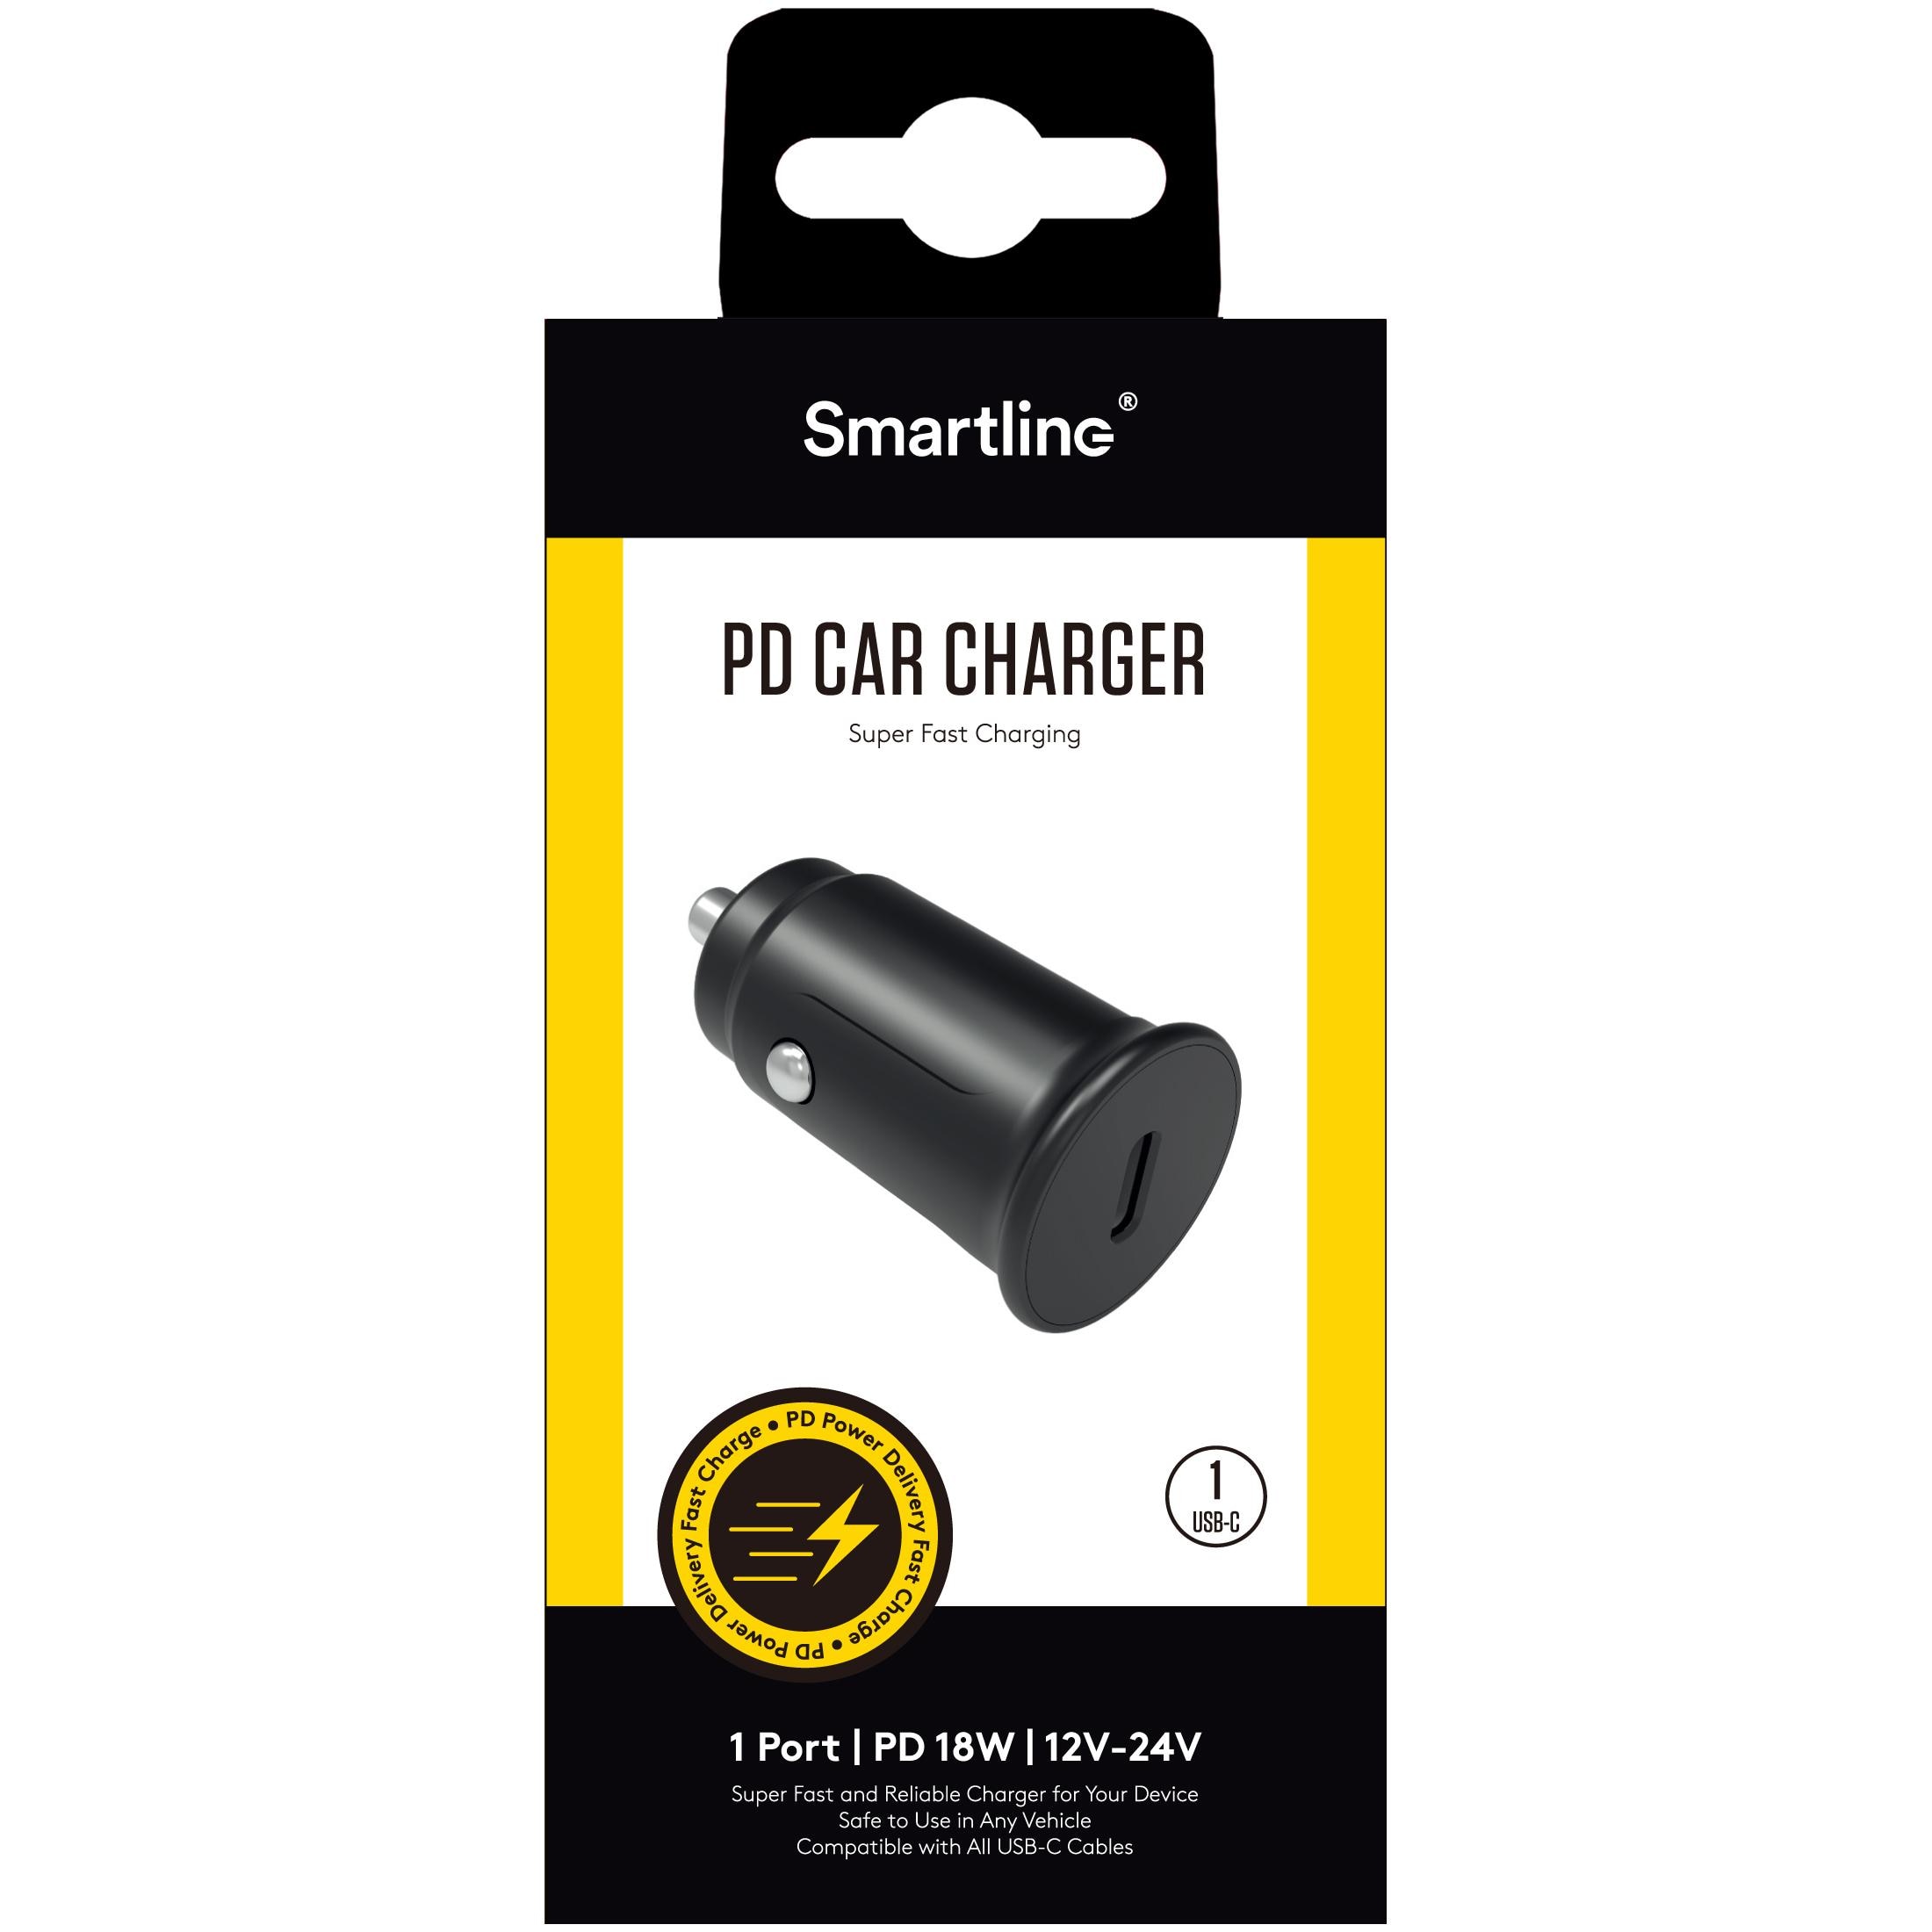 Car Charger Power Delivery USB-C 20W 12V-24V Black